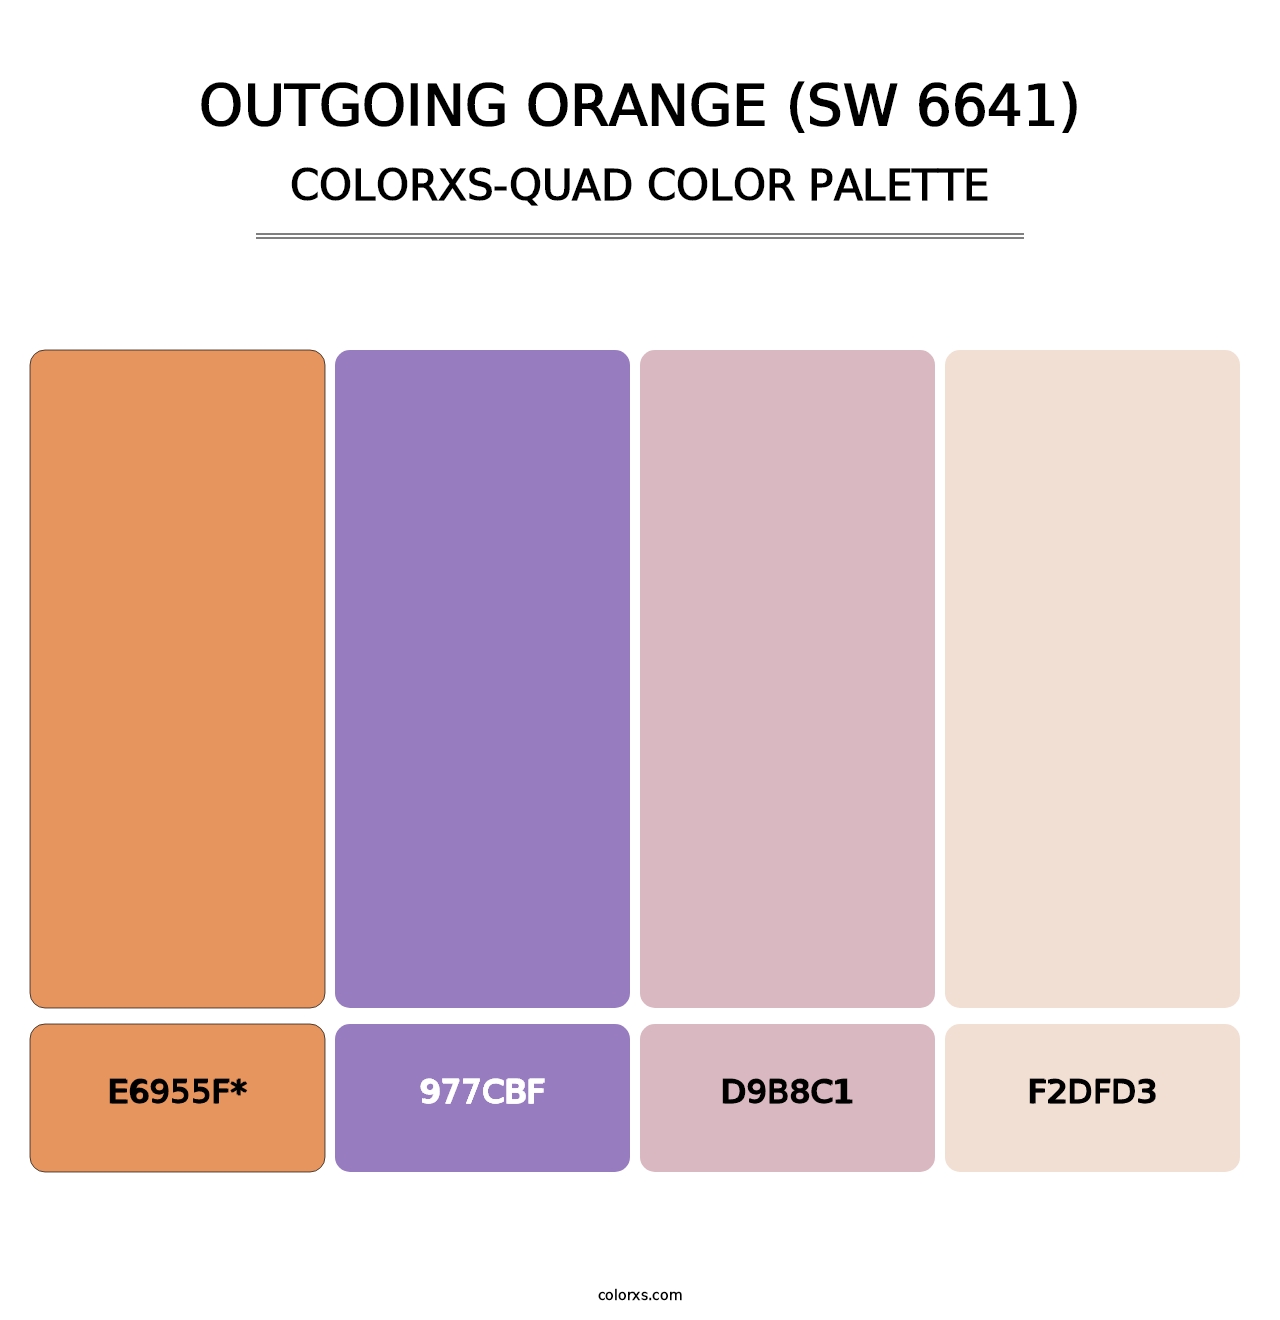 Outgoing Orange (SW 6641) - Colorxs Quad Palette